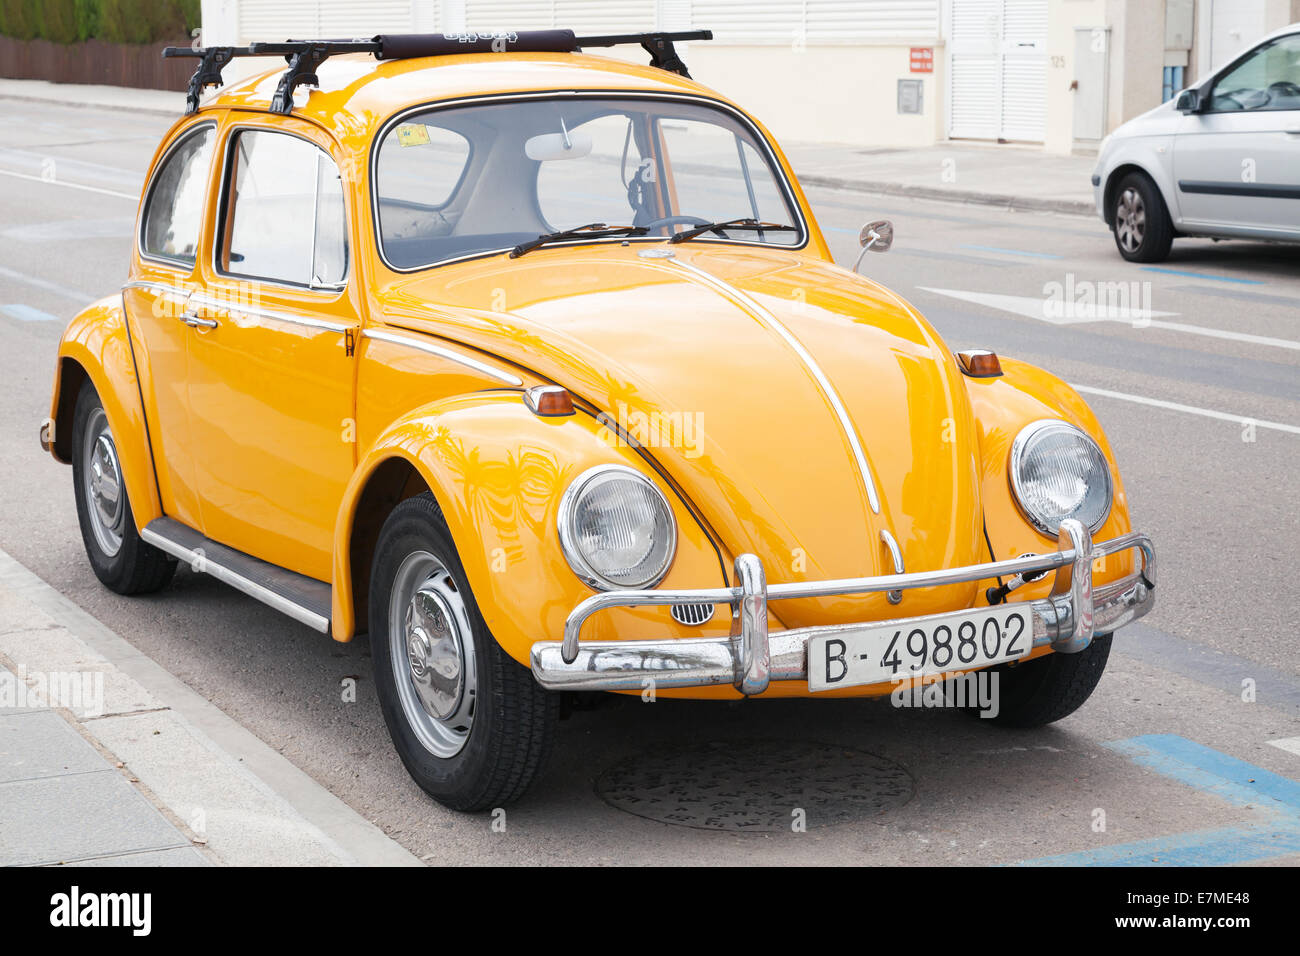 Volkswagen amarillo Kafer está estacionado en la carretera Foto de stock